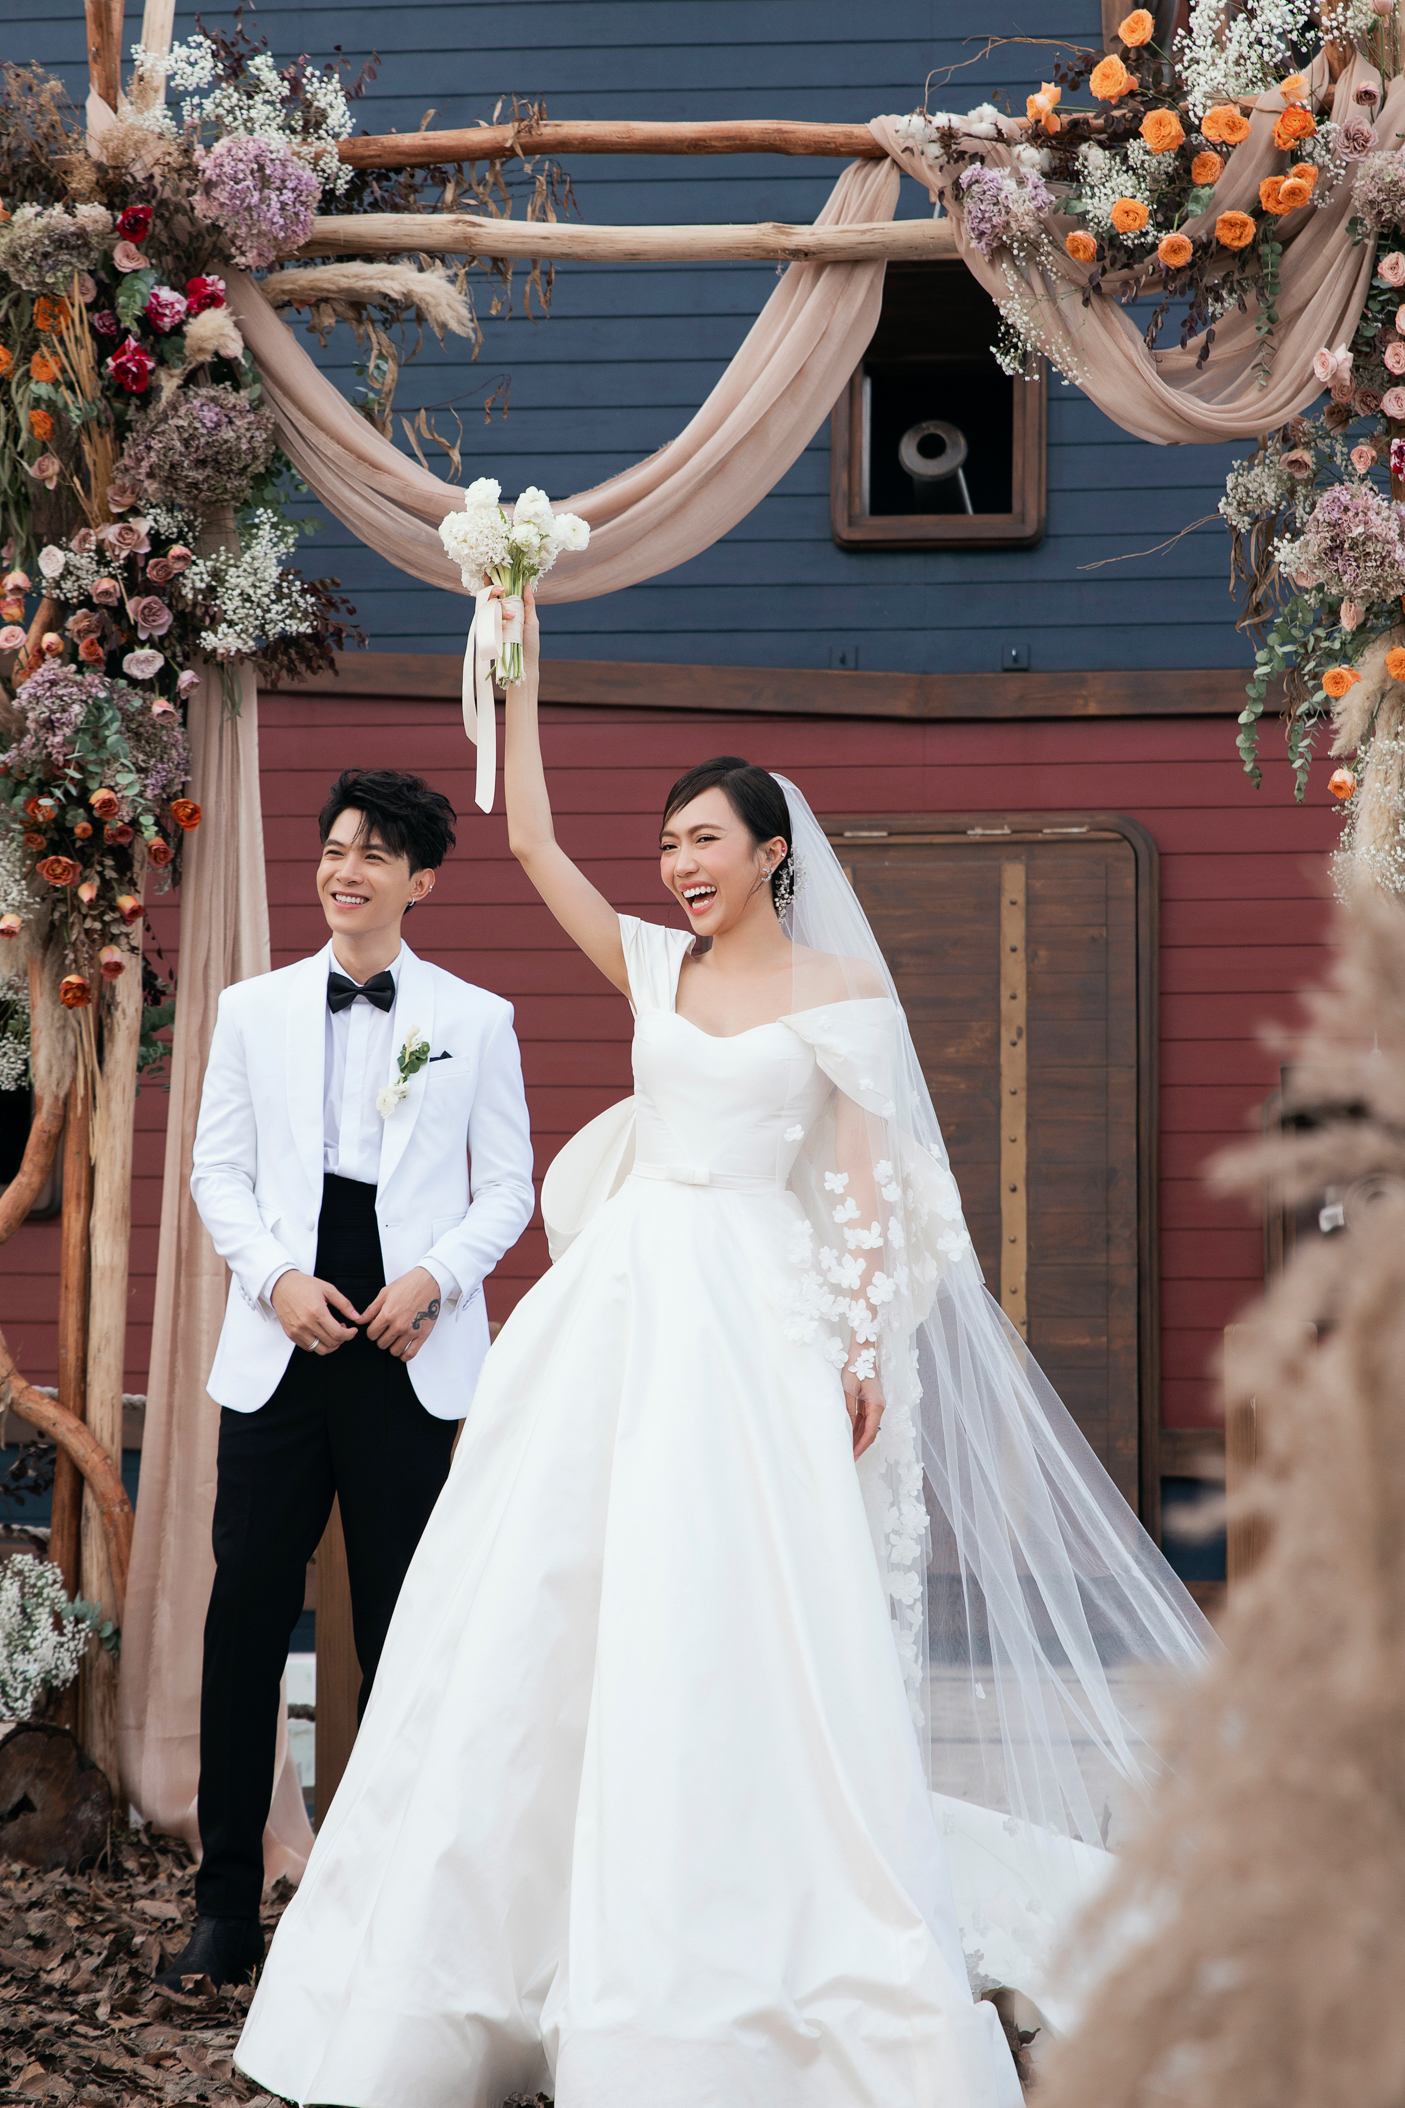 Đám cưới Anh Tú Diệu Nhi là một trong những sự kiện được mong đợi nhất trong giới showbiz Việt. Cùng chiêm ngưỡng bức hình đầu tiên của cặp đôi trong ngày hạnh phúc, để được chứng kiến tình yêu và sự trân trọng giữa họ!